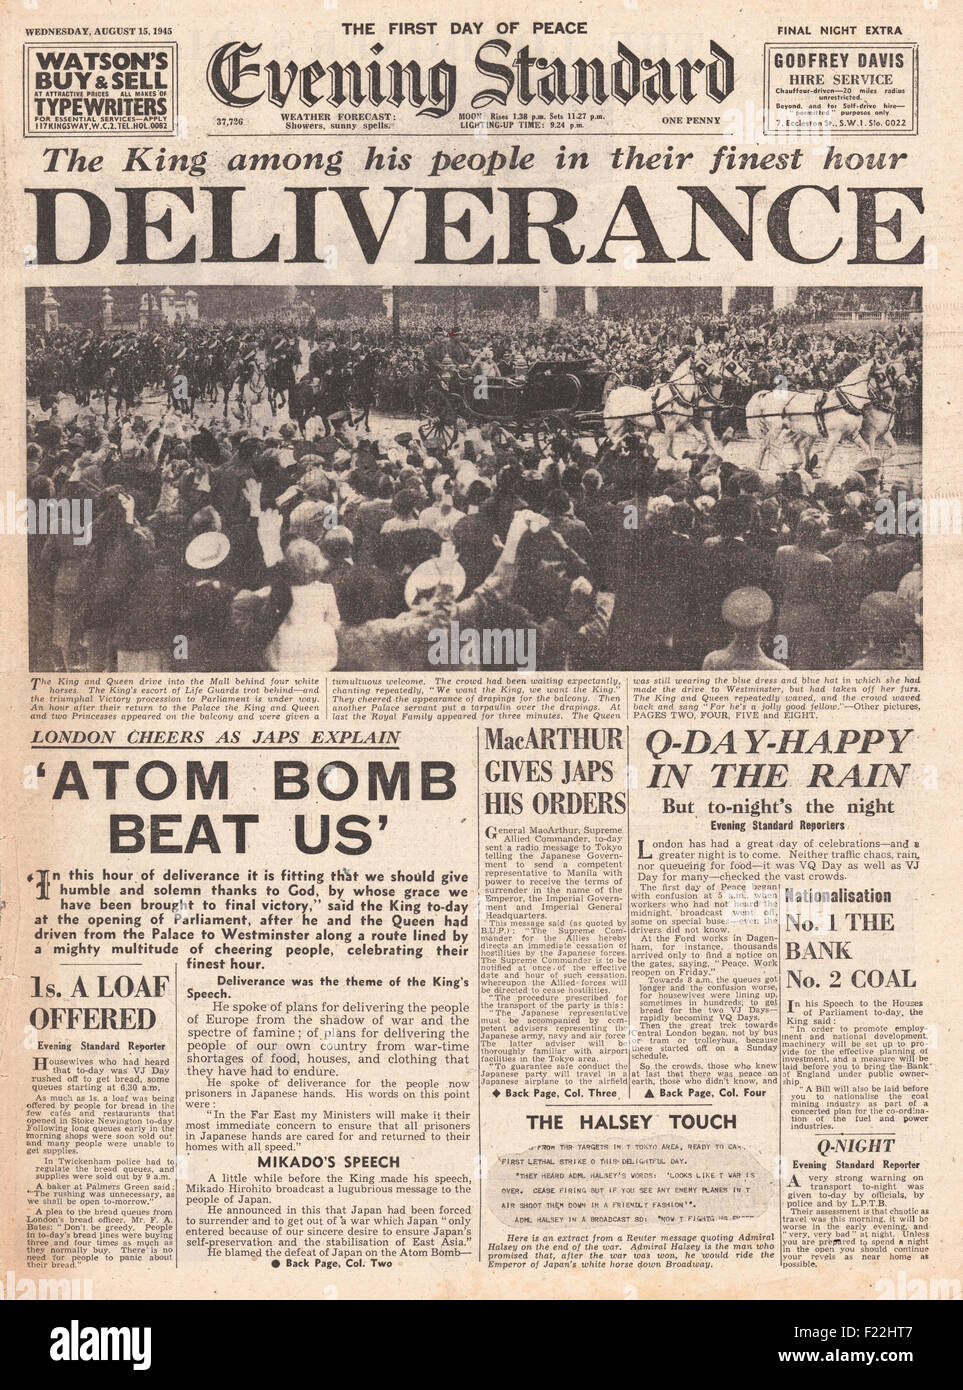 Evening Standard (London) Titelseite 1945 Ende des zweiten Weltkriegs und VJ Day Berichterstattung Stockfoto